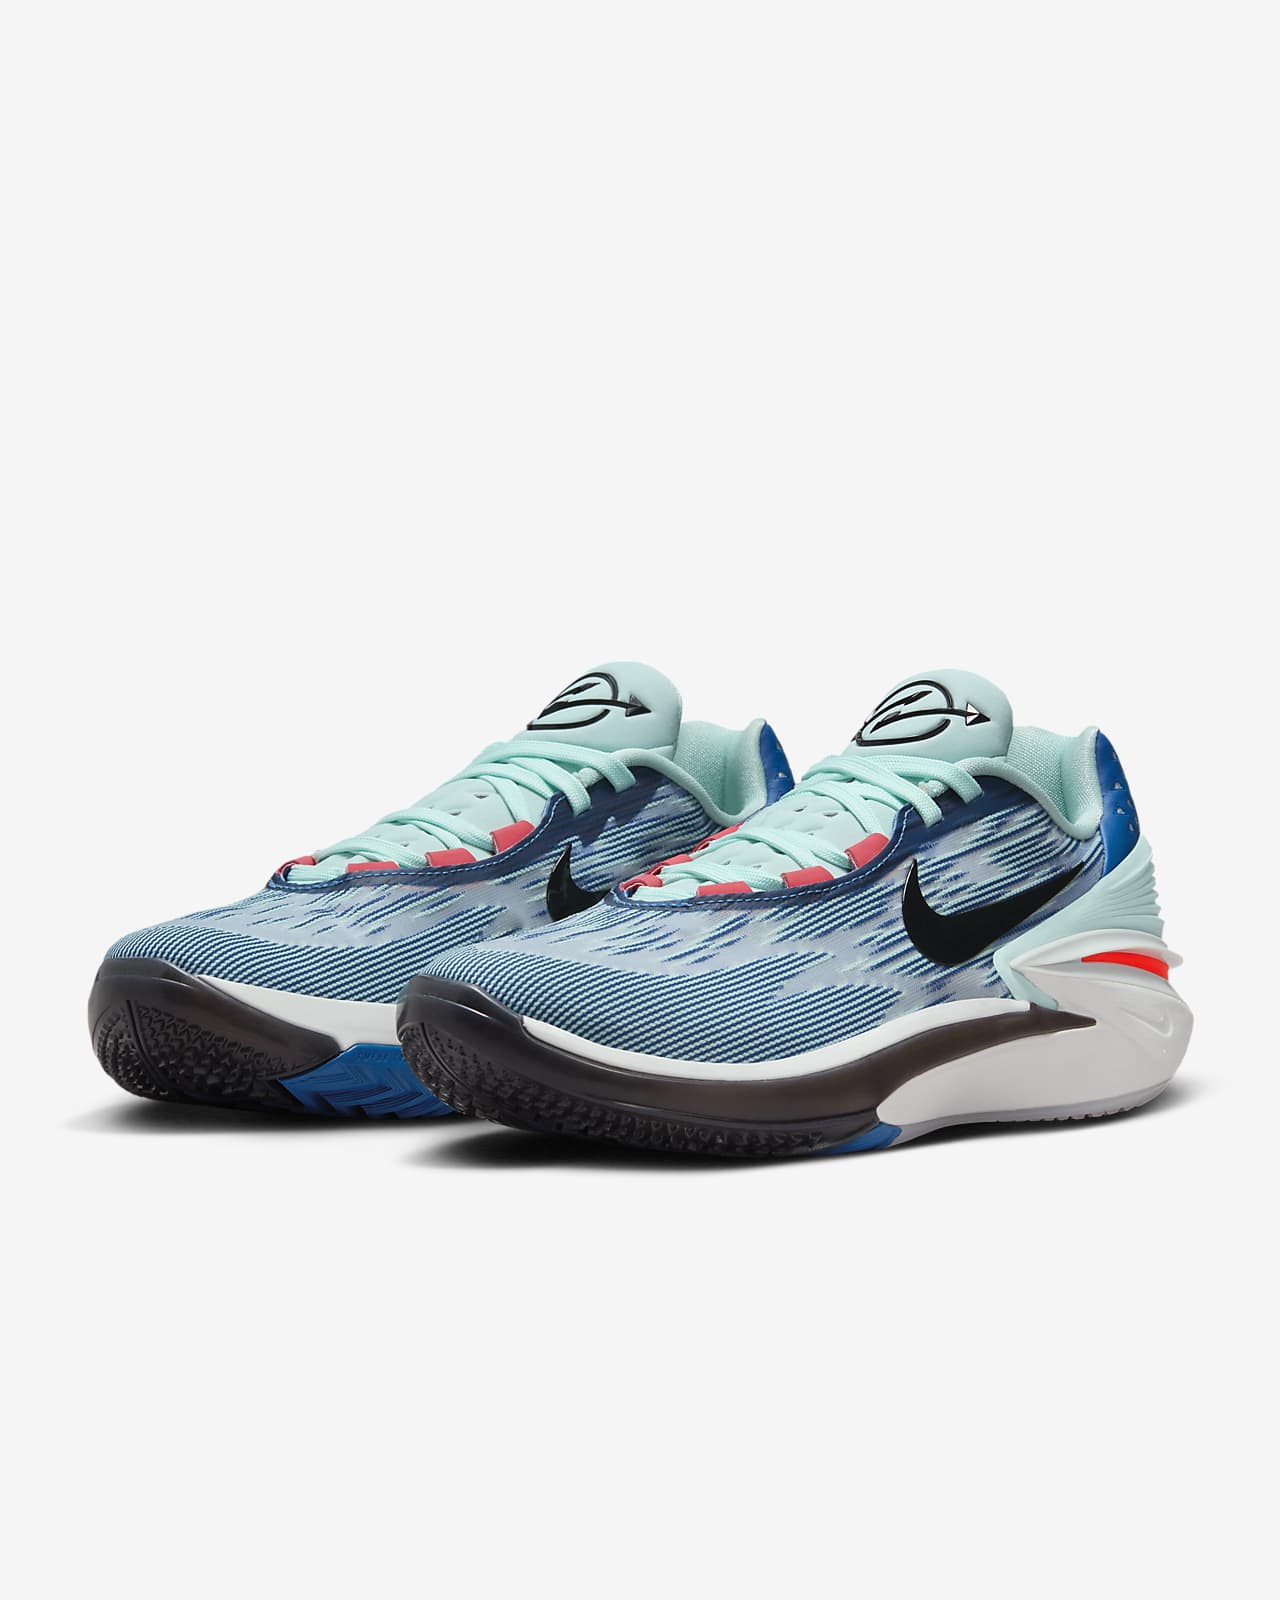 Nike Air Zoom G.T. Cut 2 EP 篮球鞋实战快速切入